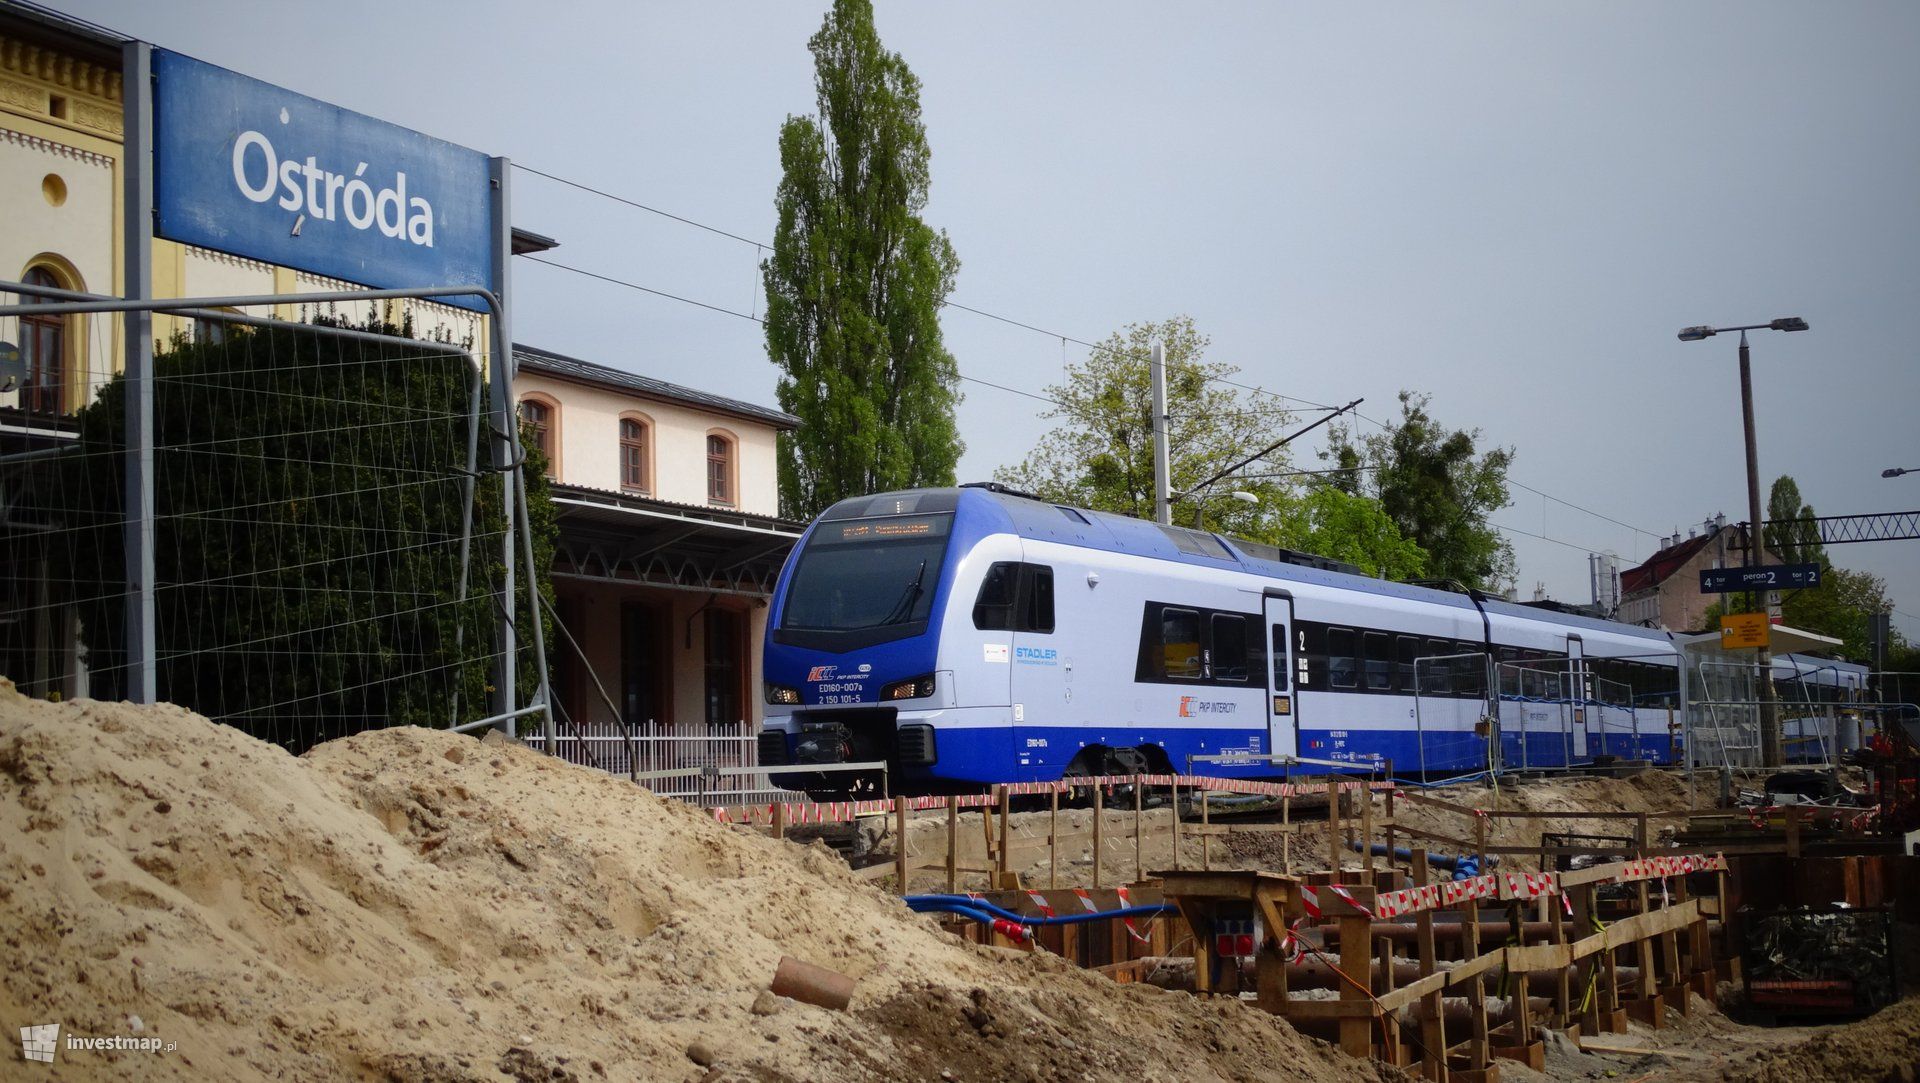 Za ćwierć miliarda złotych trwa przebudowa stacji kolejowej w Ostródzie 